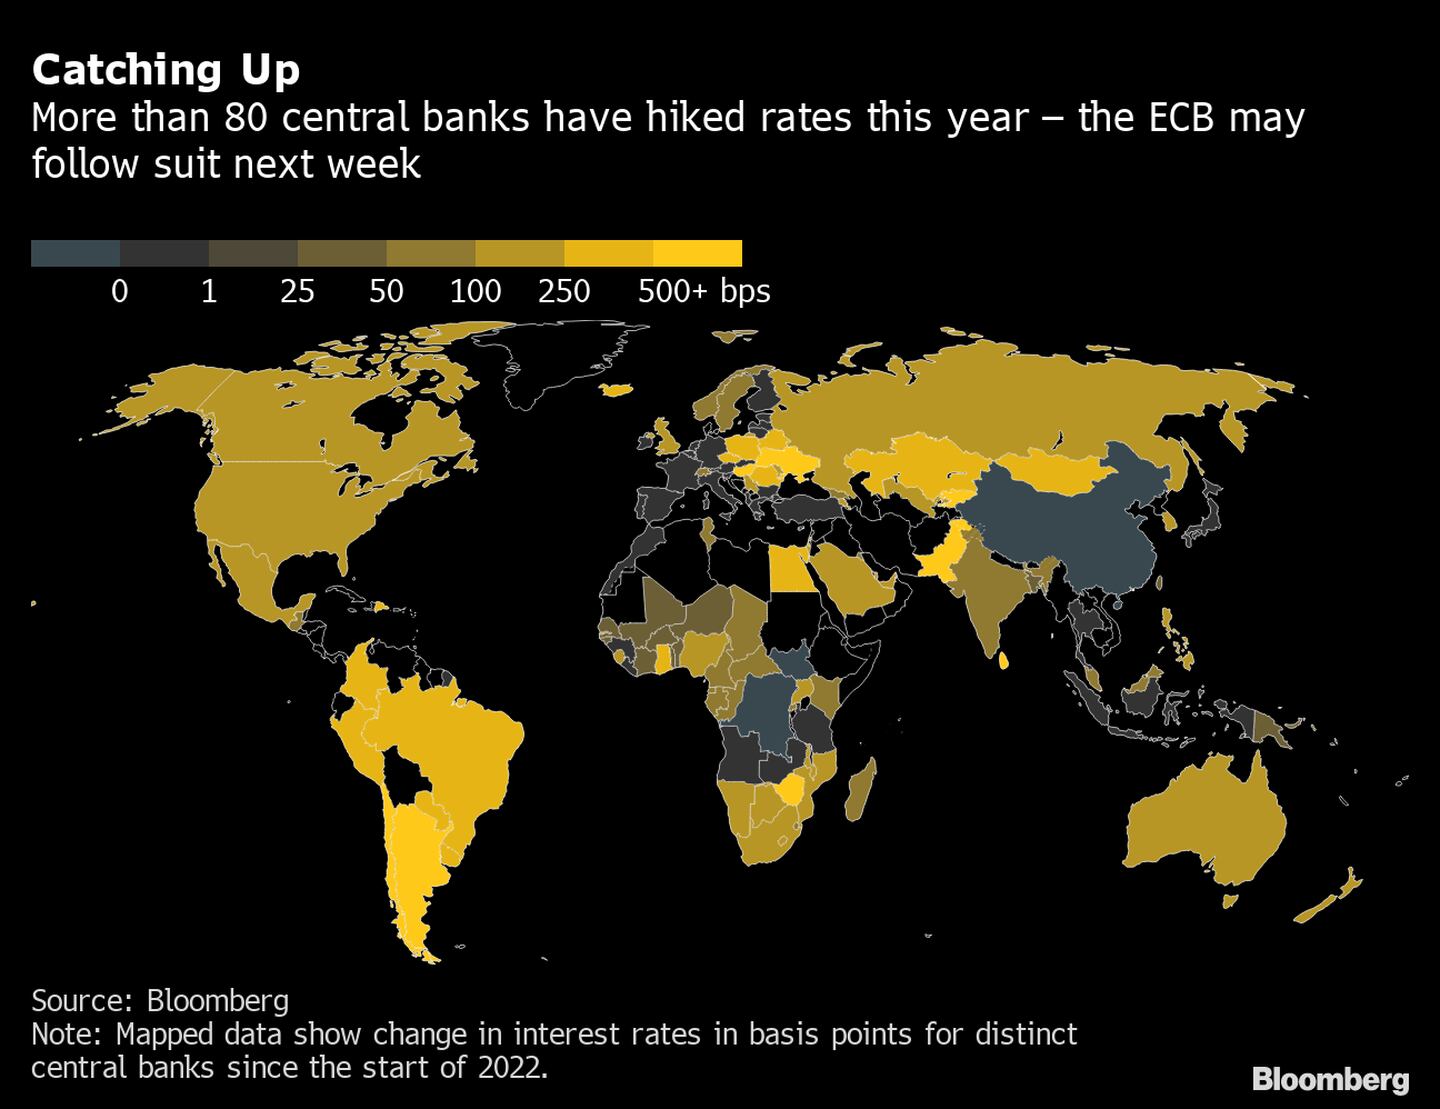 Más de 80 bancos centrales han elevado las tasas de interés este año. Es posible que el BCE siga la misma ruta la próxima semana. dfd